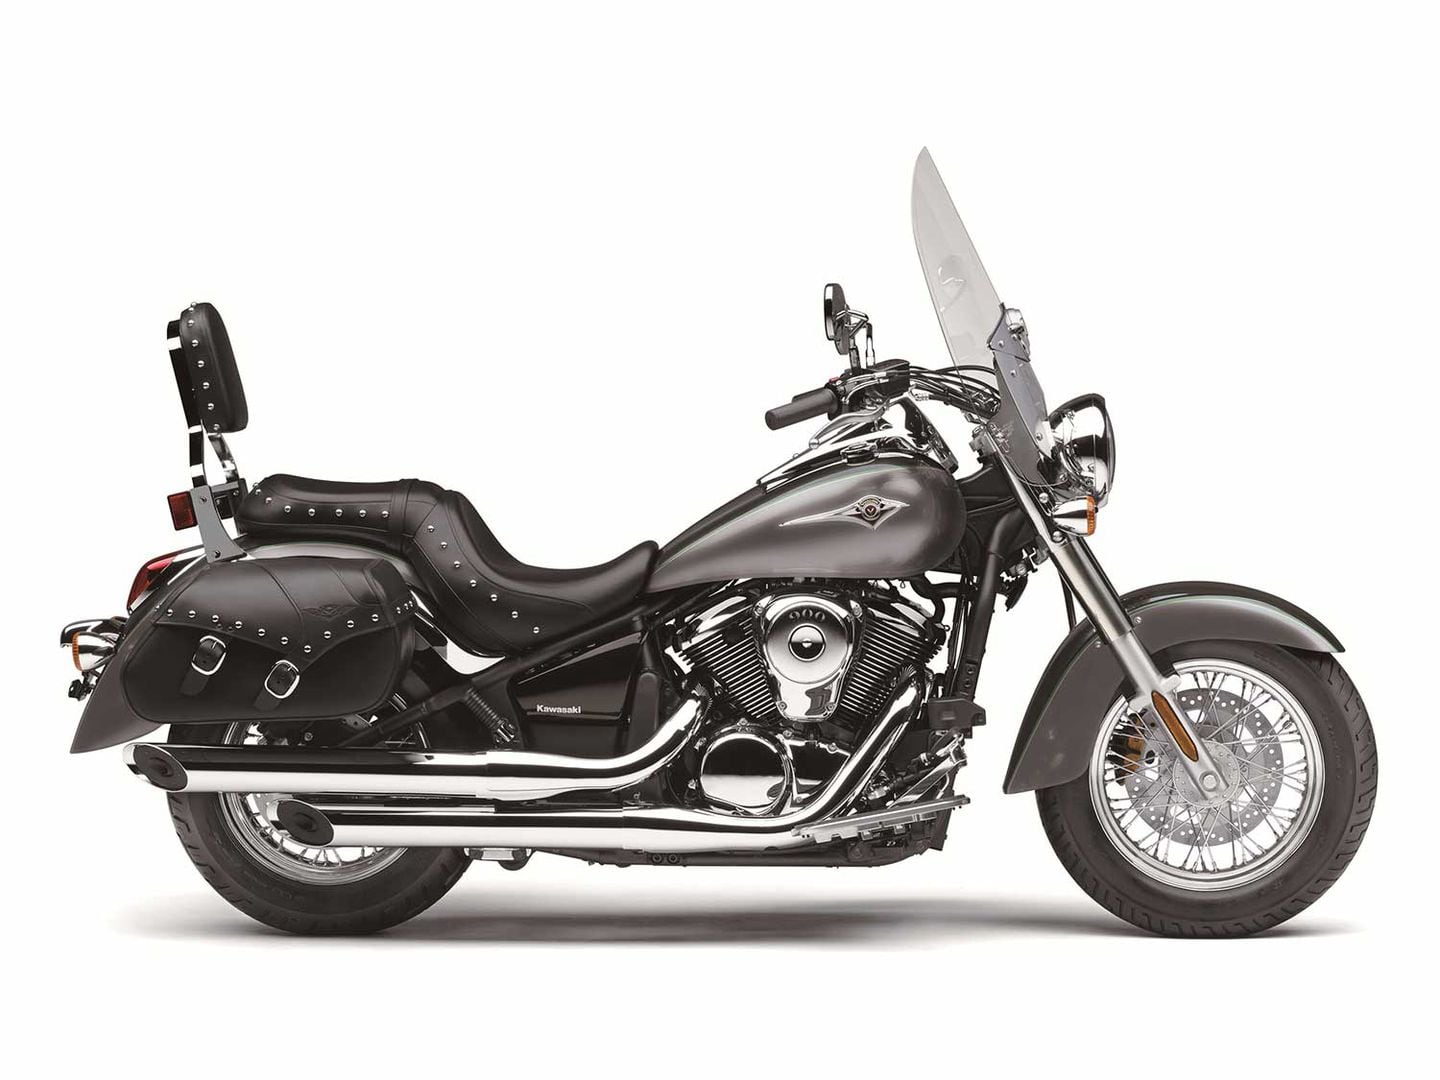 2020 Kawasaki Cruiser Lineup | Motorcycle